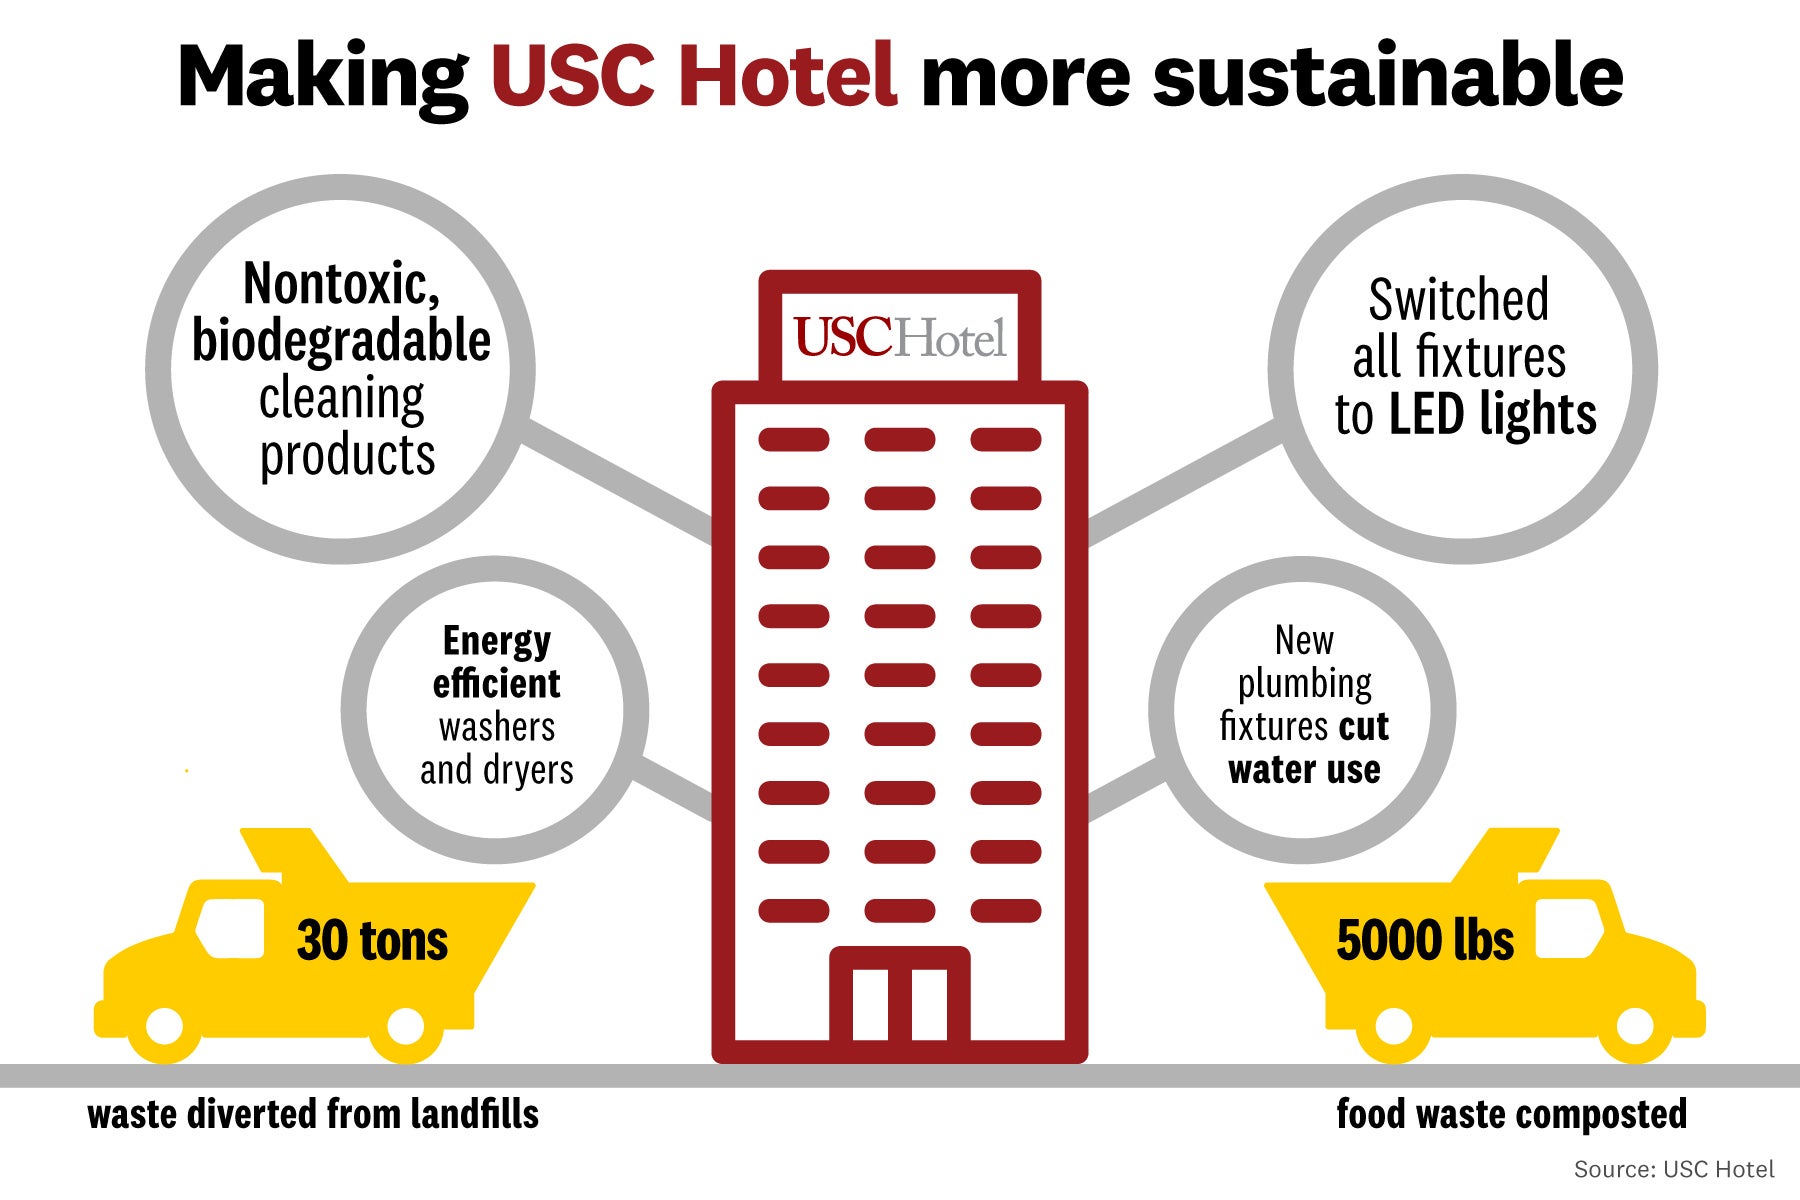 usc hotel susatainability infographic